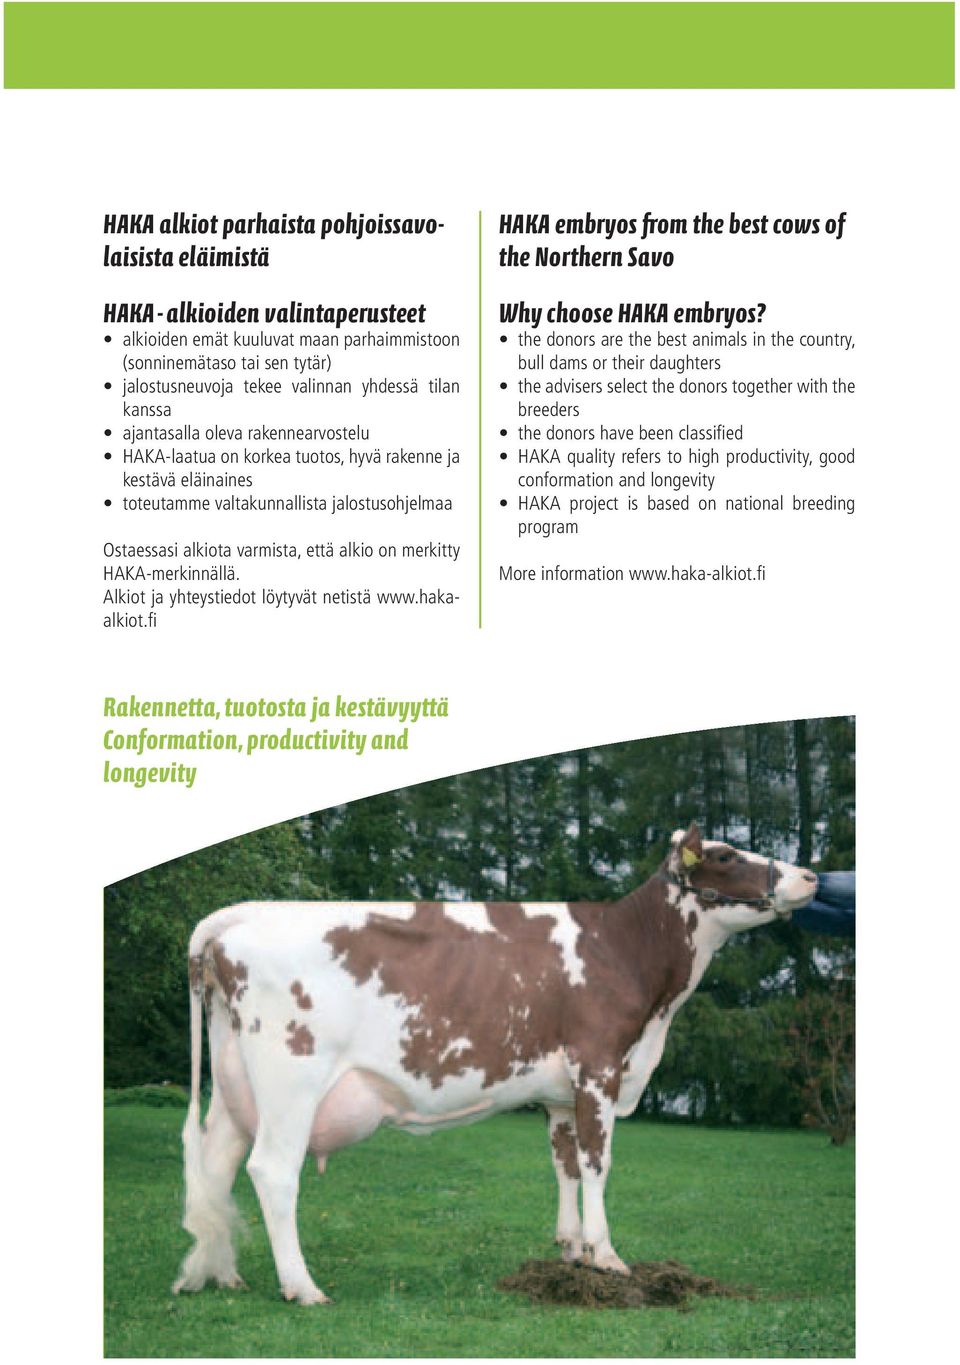 on merkitty HAKA-merkinnällä. Alkiot ja yhteystiedot löytyvät netistä www.hakaalkiot.fi HAKA embryos from the best cows of the Northern Savo Why choose HAKA embryos?